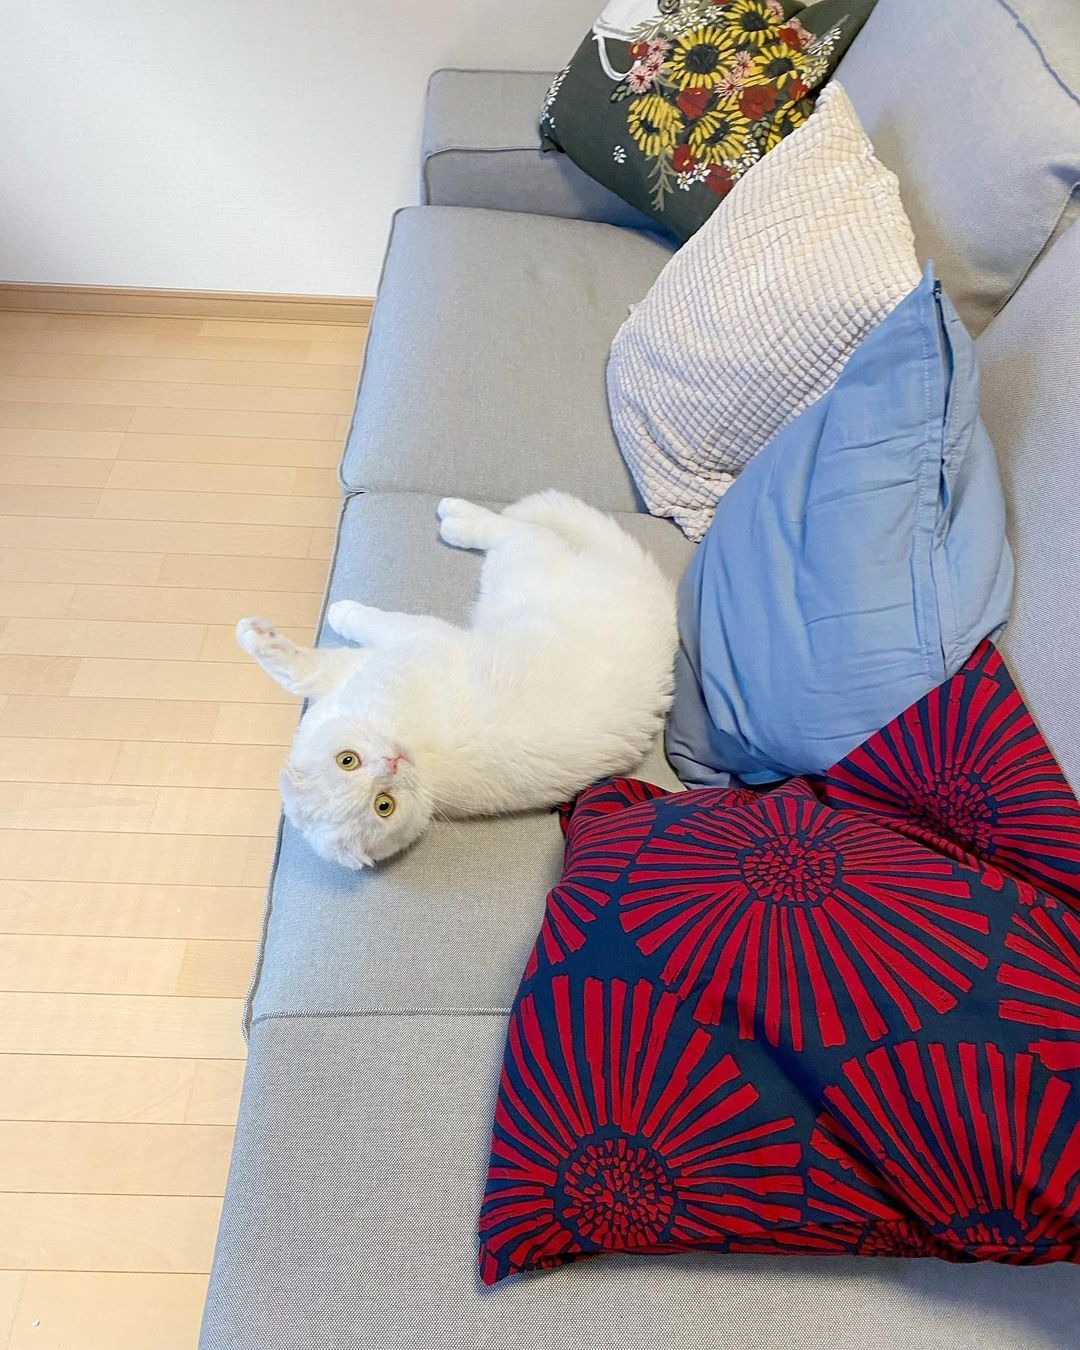 「ママのものはおれのもの」新品のソファを占拠する猫のむくくんがかわいすぎ